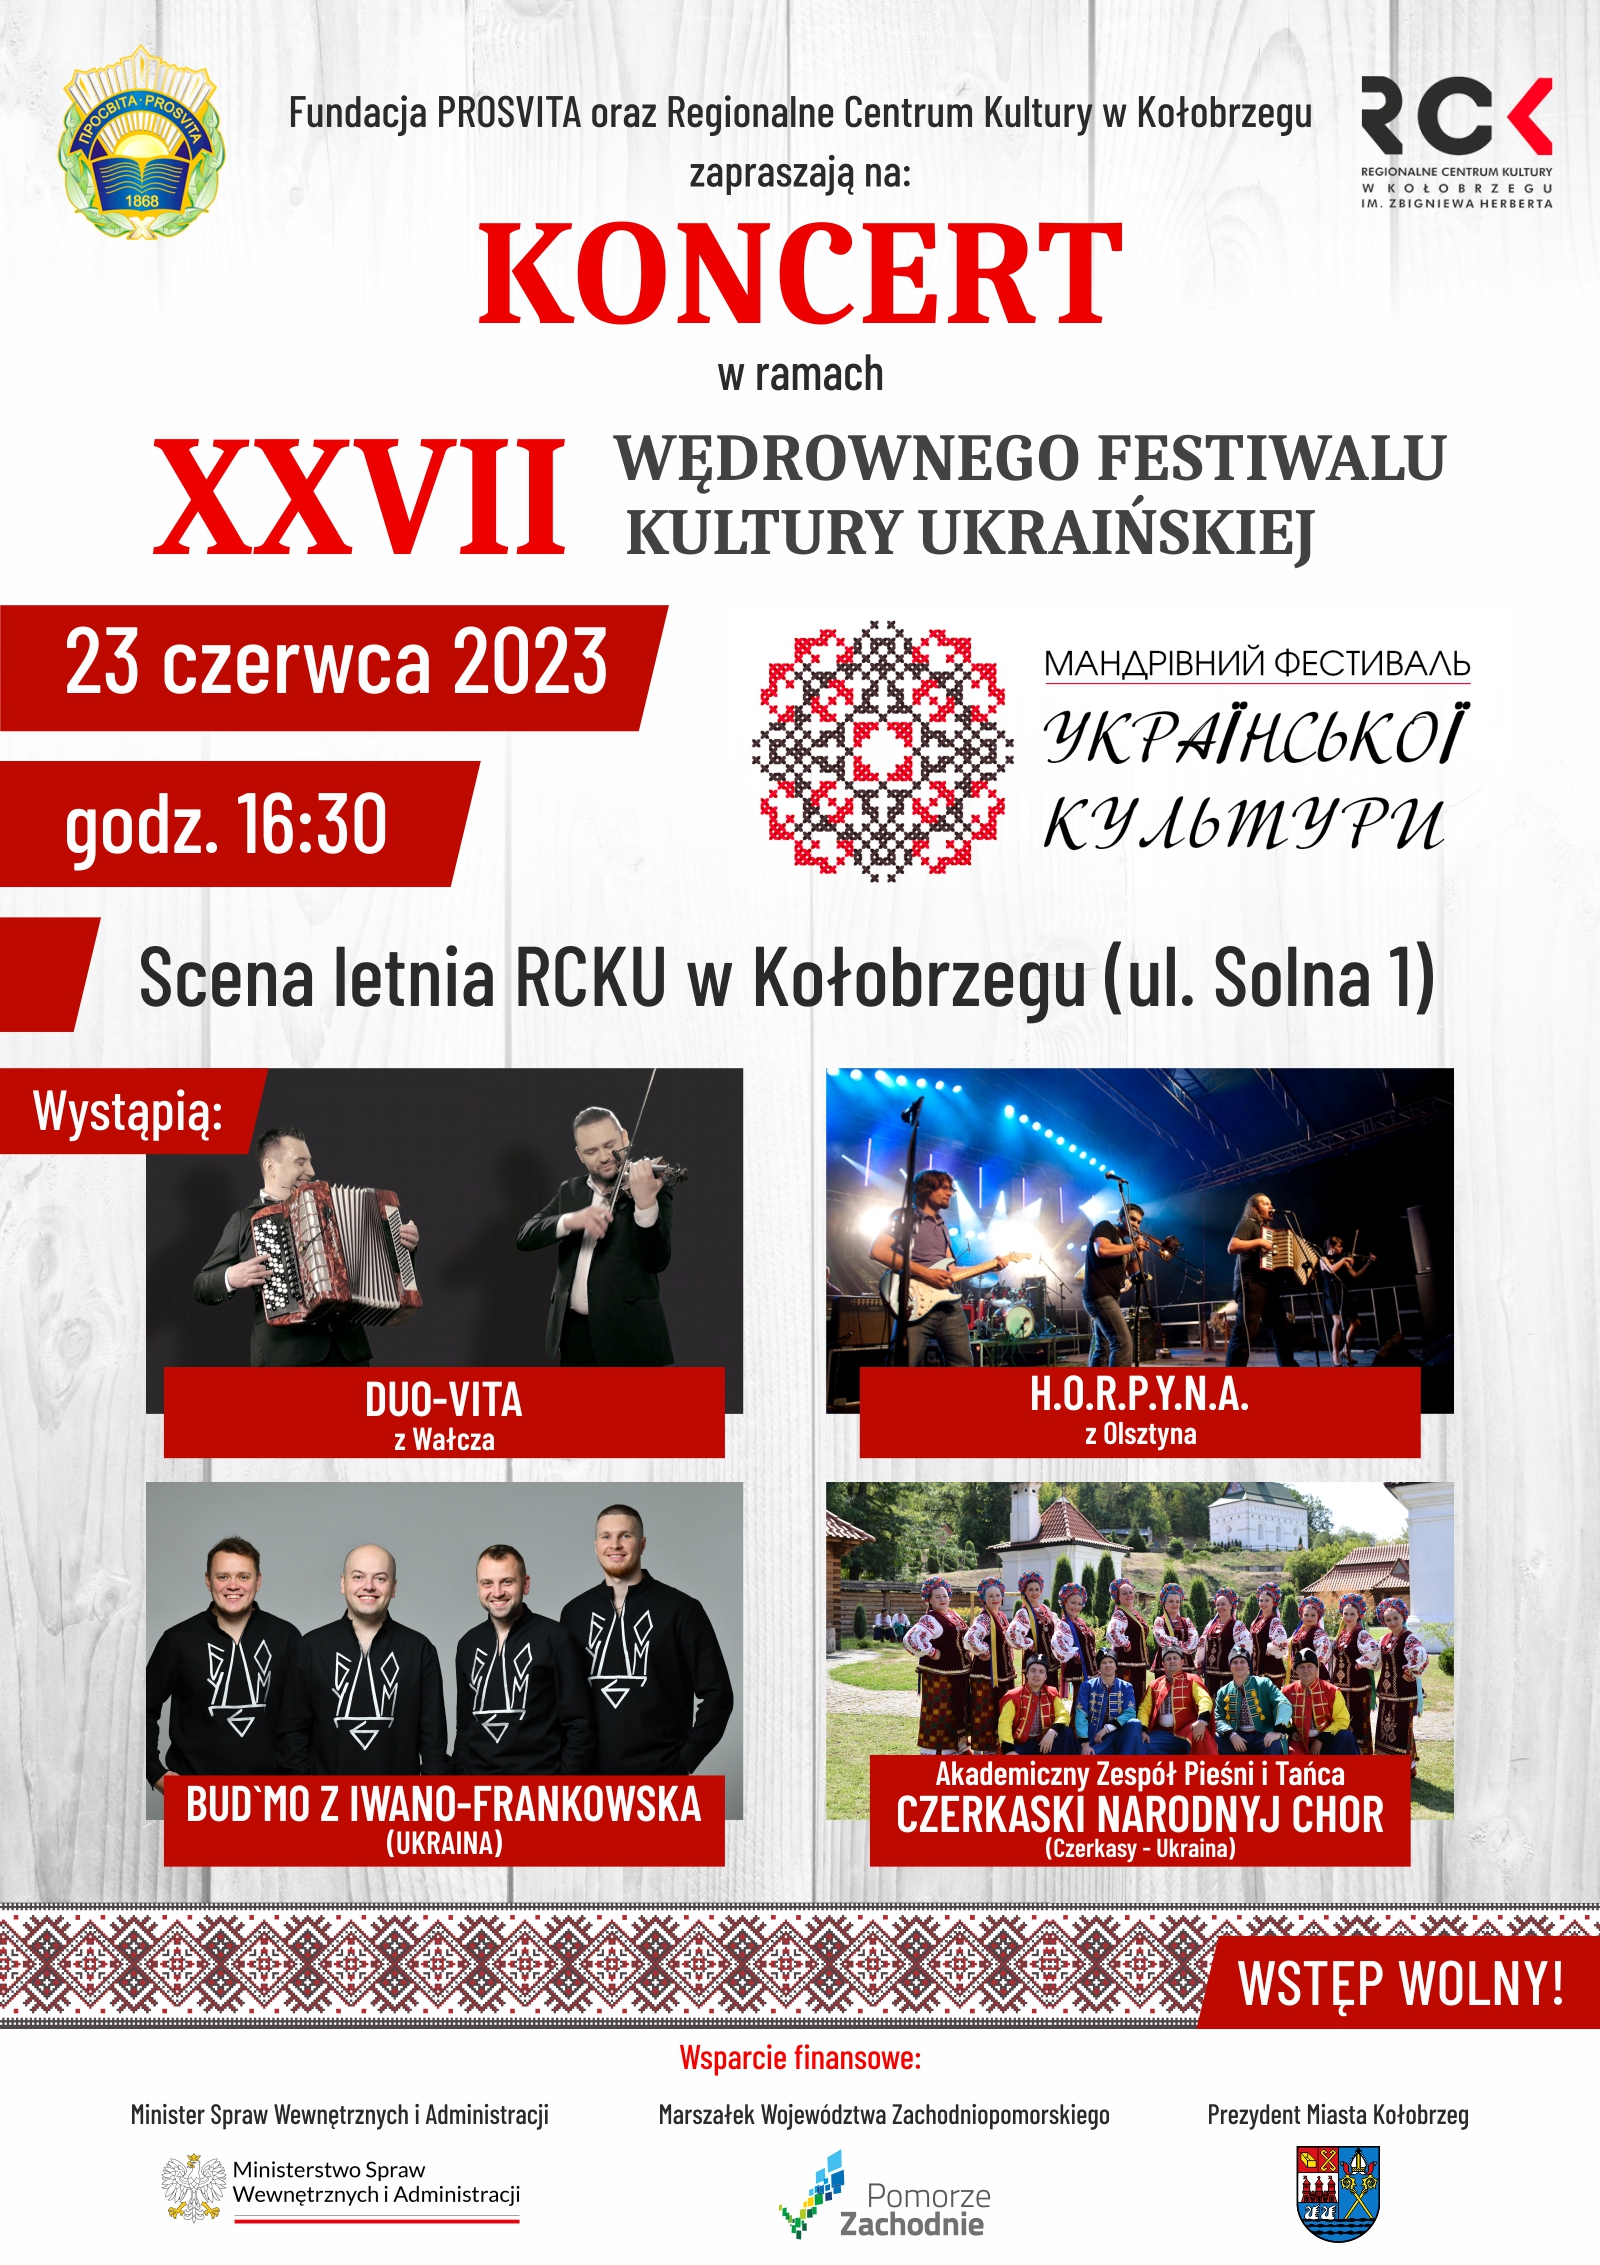 Wędrowny festiwal 2023 Kołobrzeg